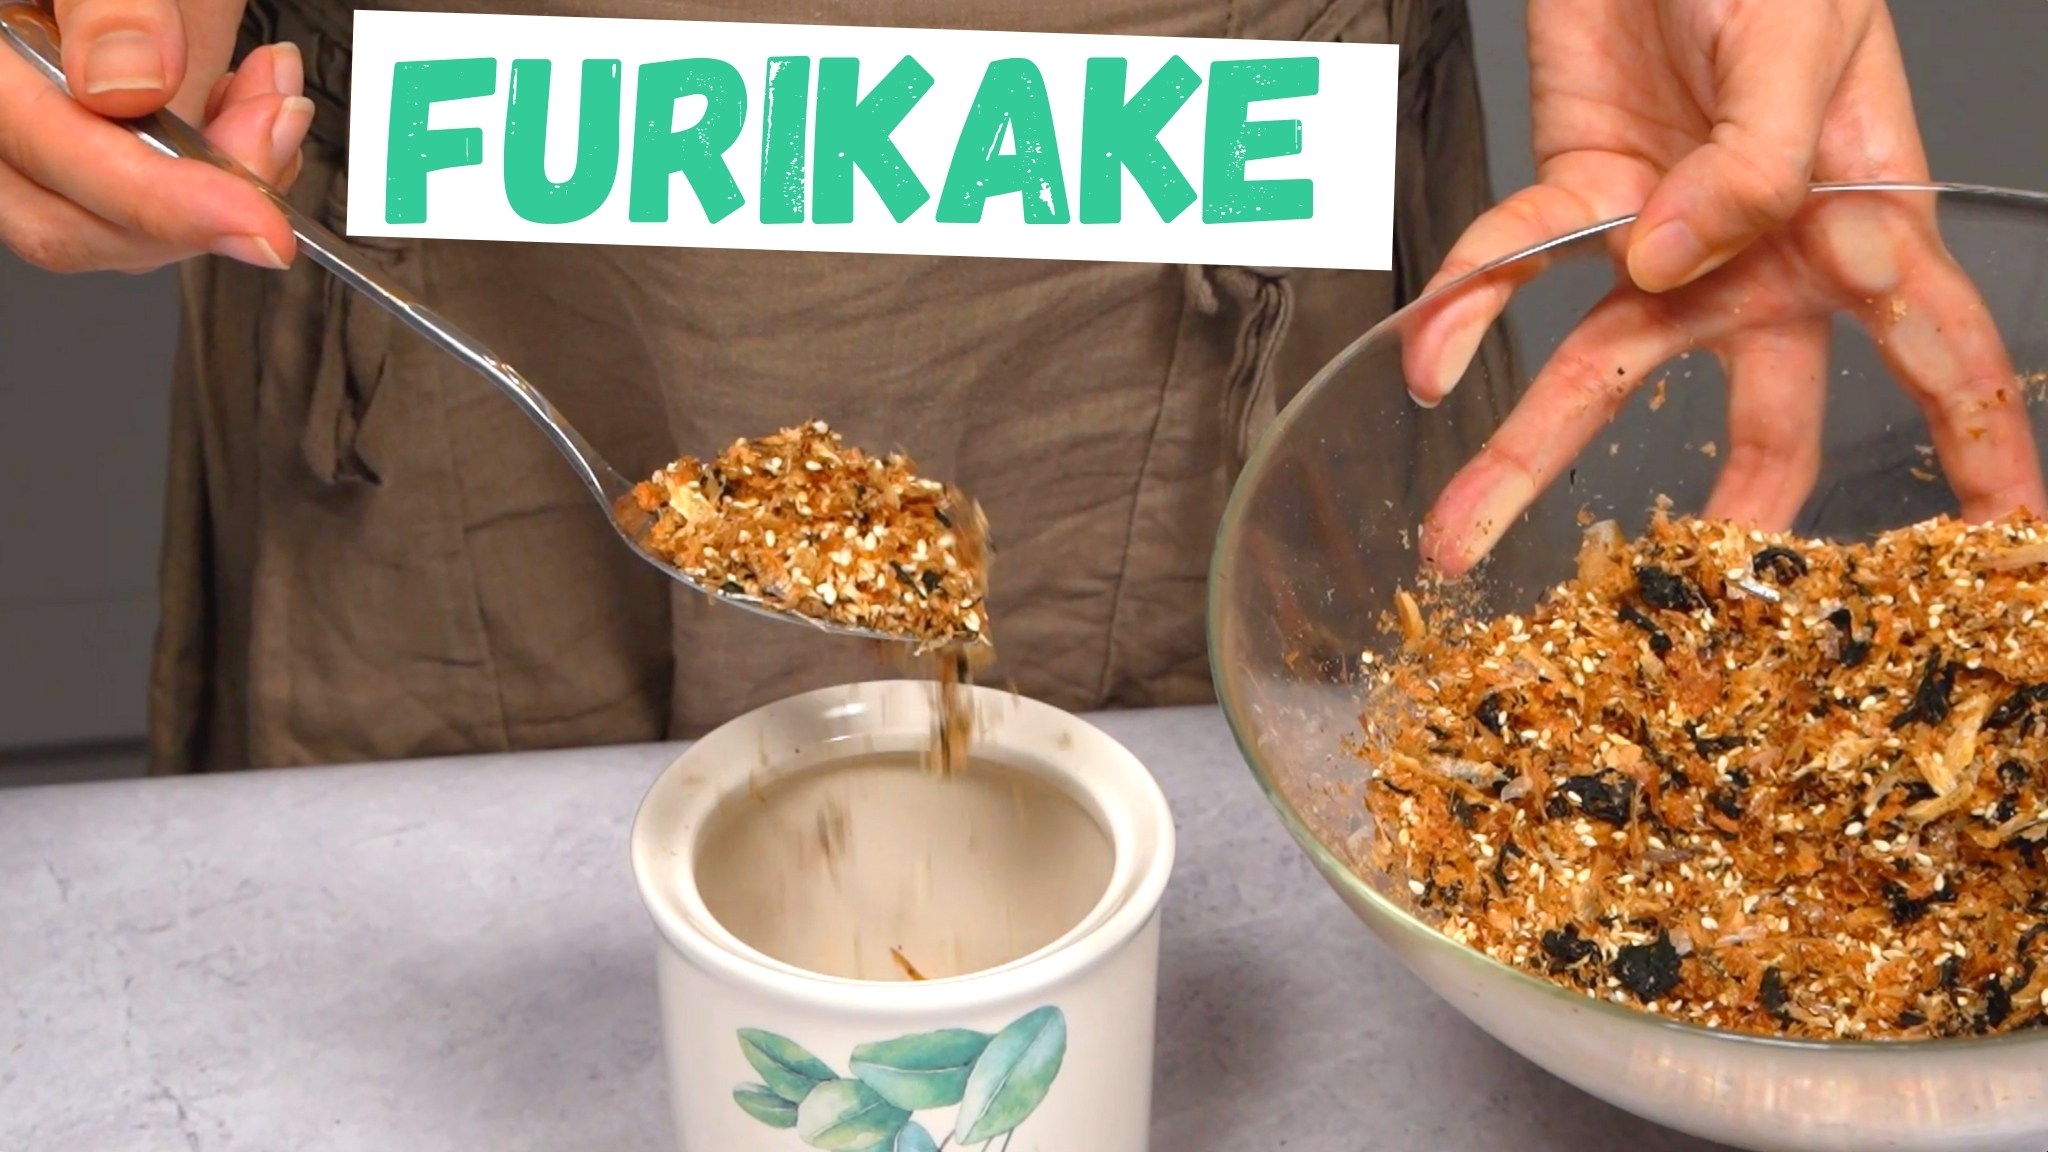 เครื่องปรุงรส Furikake ที่ดีที่สุด: แบรนด์และรสชาติยอดนิยม